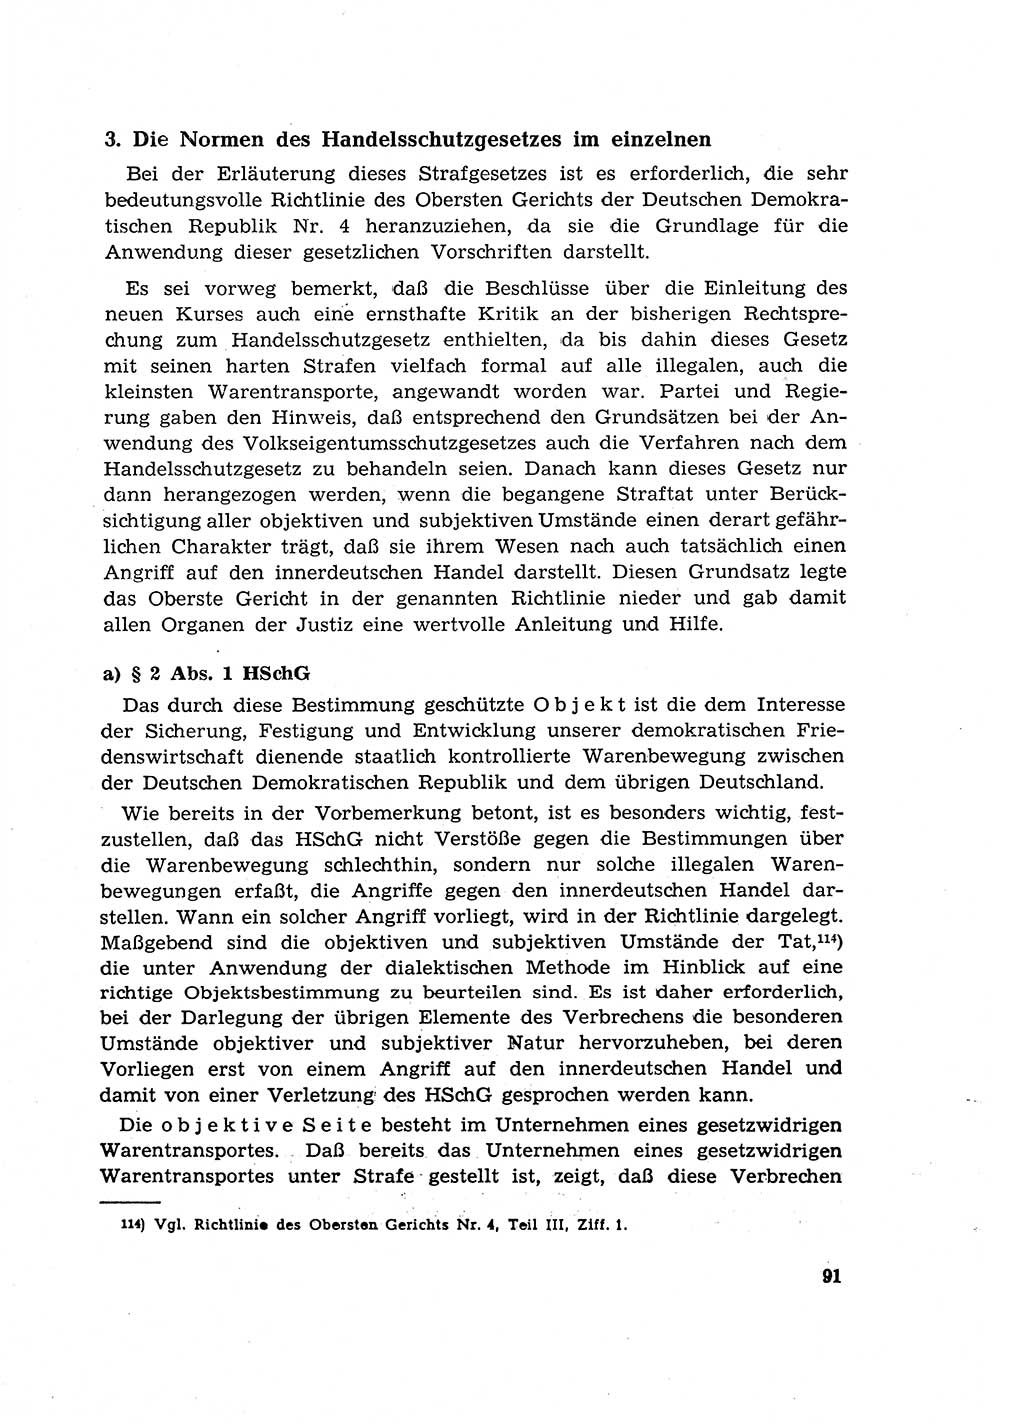 Materialien zum Strafrecht, Besonderer Teil [Deutsche Demokratische Republik (DDR)] 1955, Seite 91 (Mat. Strafr. BT DDR 1955, S. 91)